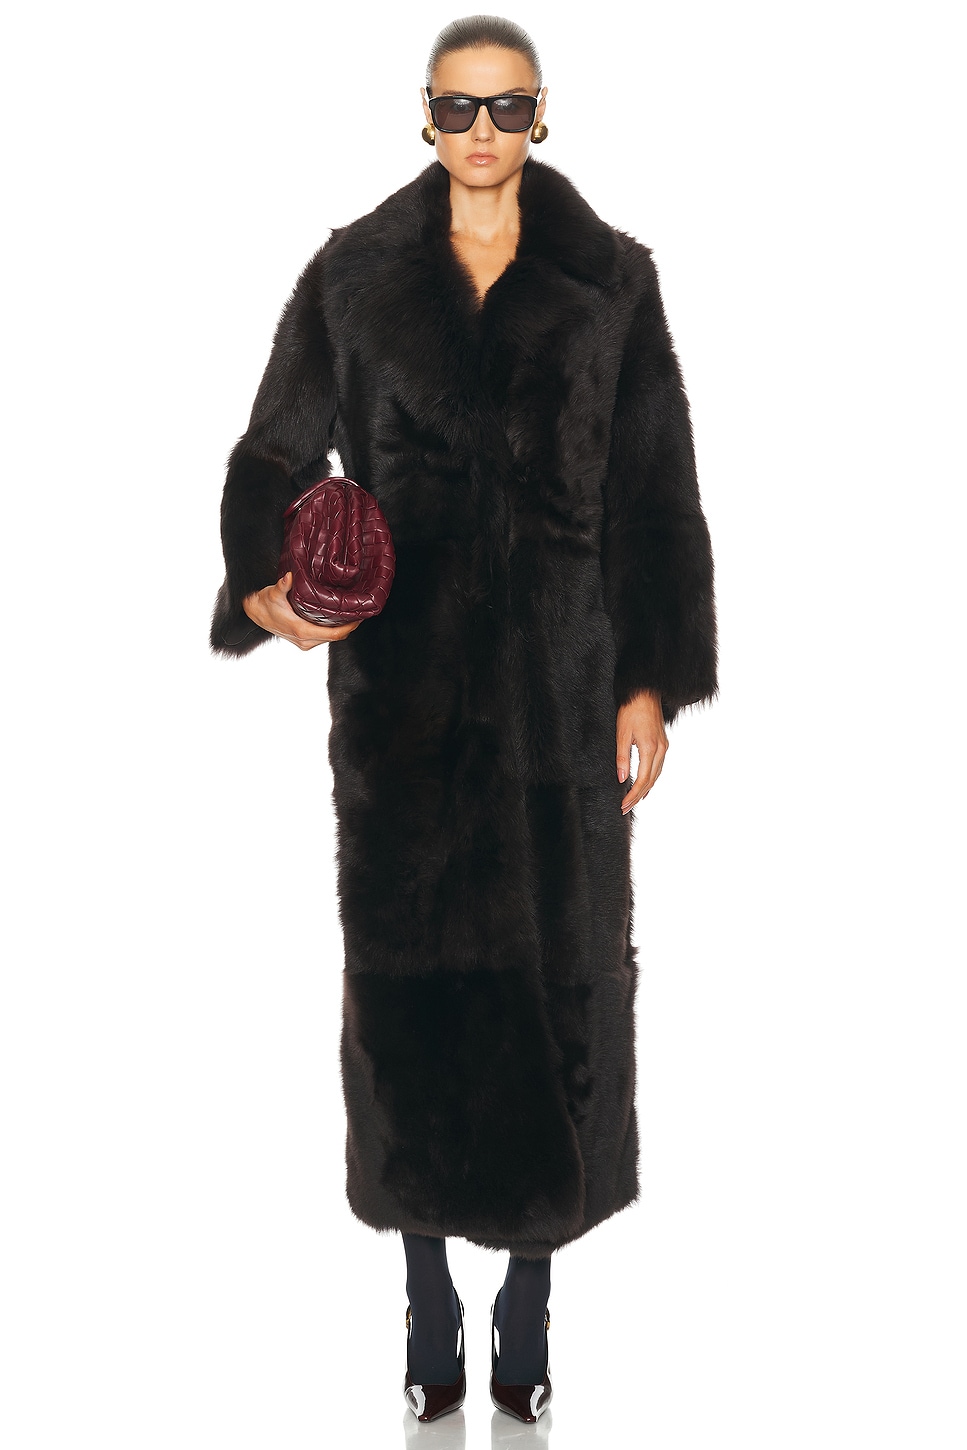 For Fwrd Evita Extra Long Coat NOUR HAMMOUR $2,550 